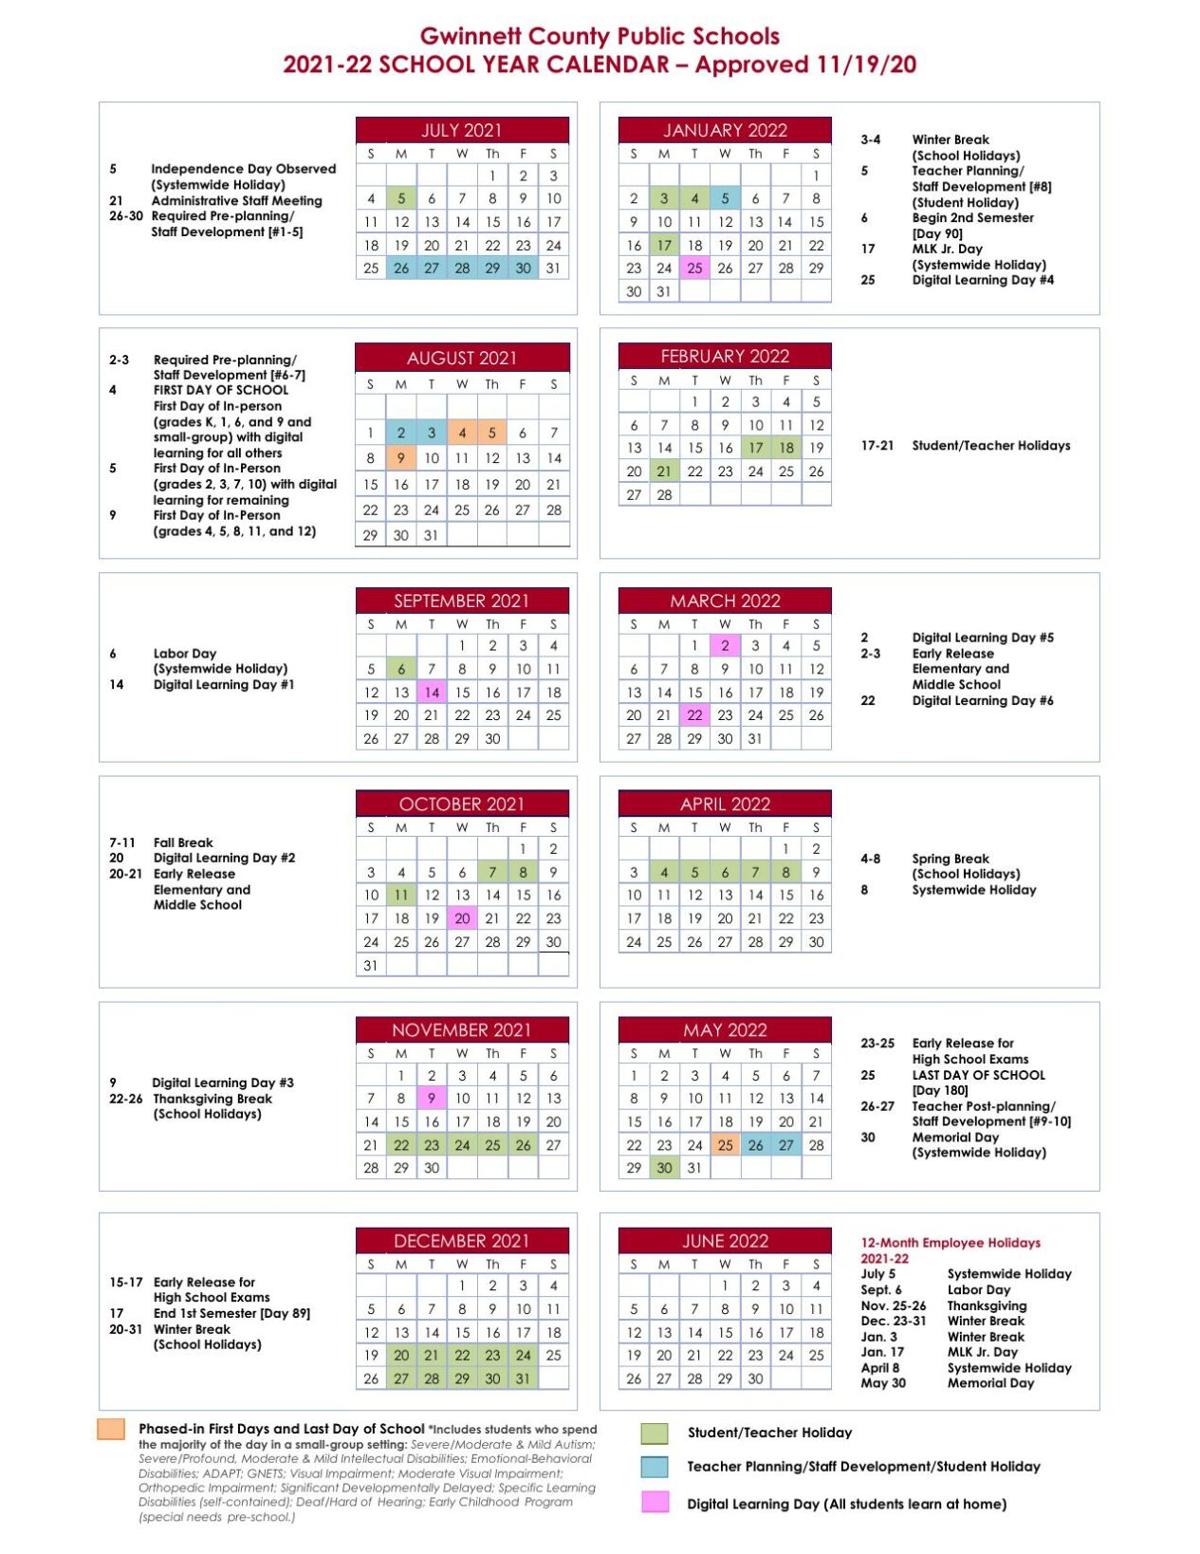 Ggc 2022 Calendar Gwinnett County Public Schools' 2021-2022 School Year Calendar | |  Gwinnettdailypost.com